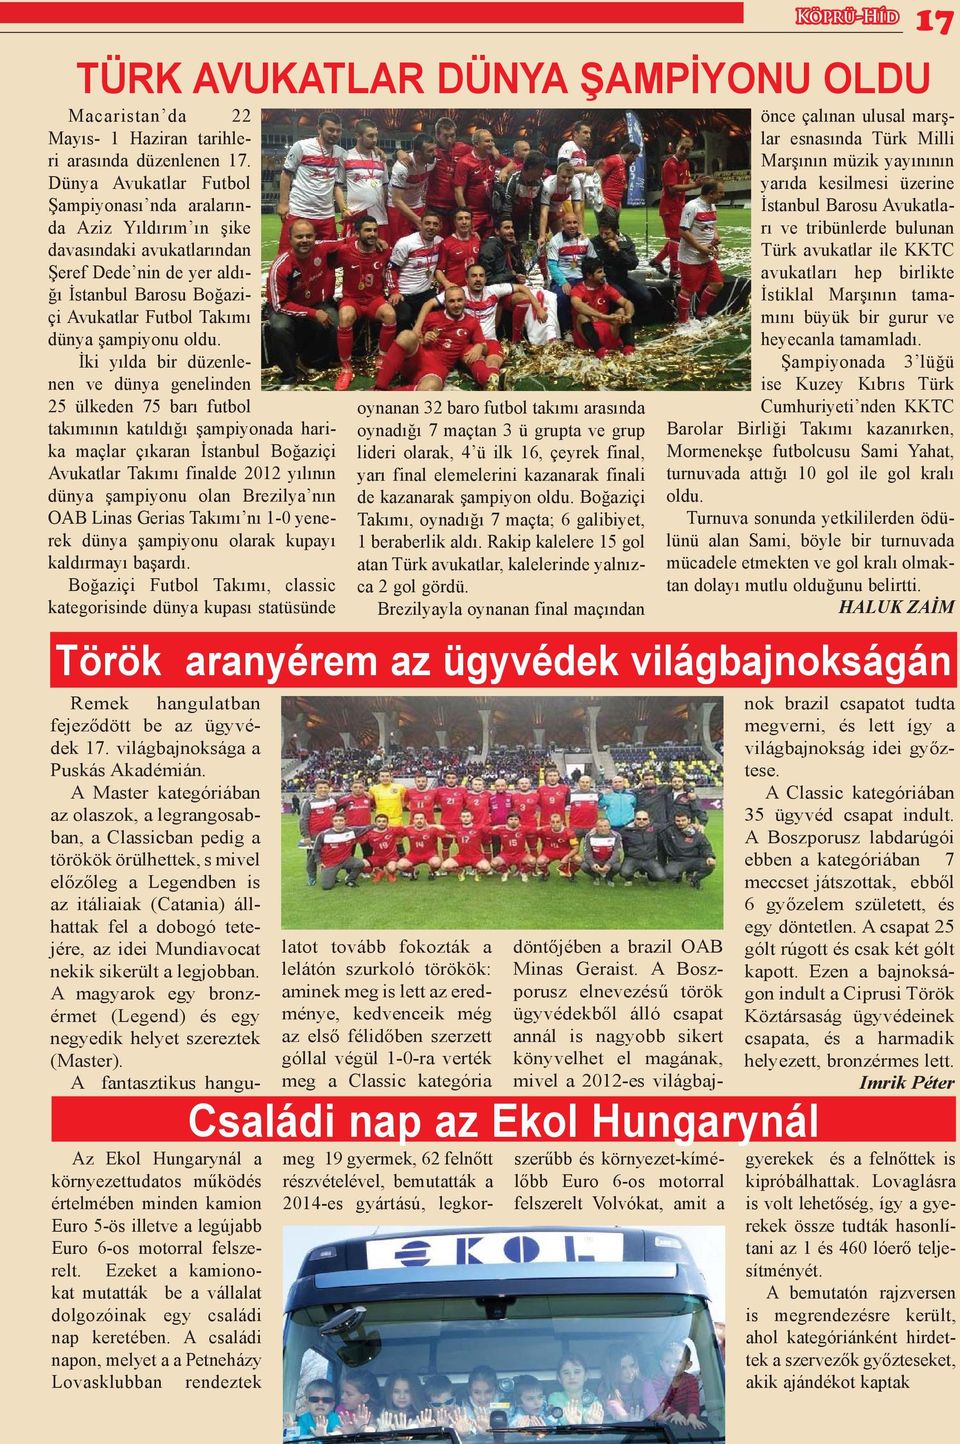 İki yılda bir düzenlenen ve dünya genelinden 25 ülkeden 75 barı futbol takımının katıldığı şampiyonada harika maçlar çıkaran İstanbul Boğaziçi Avukatlar Takımı finalde 2012 yılının dünya şampiyonu